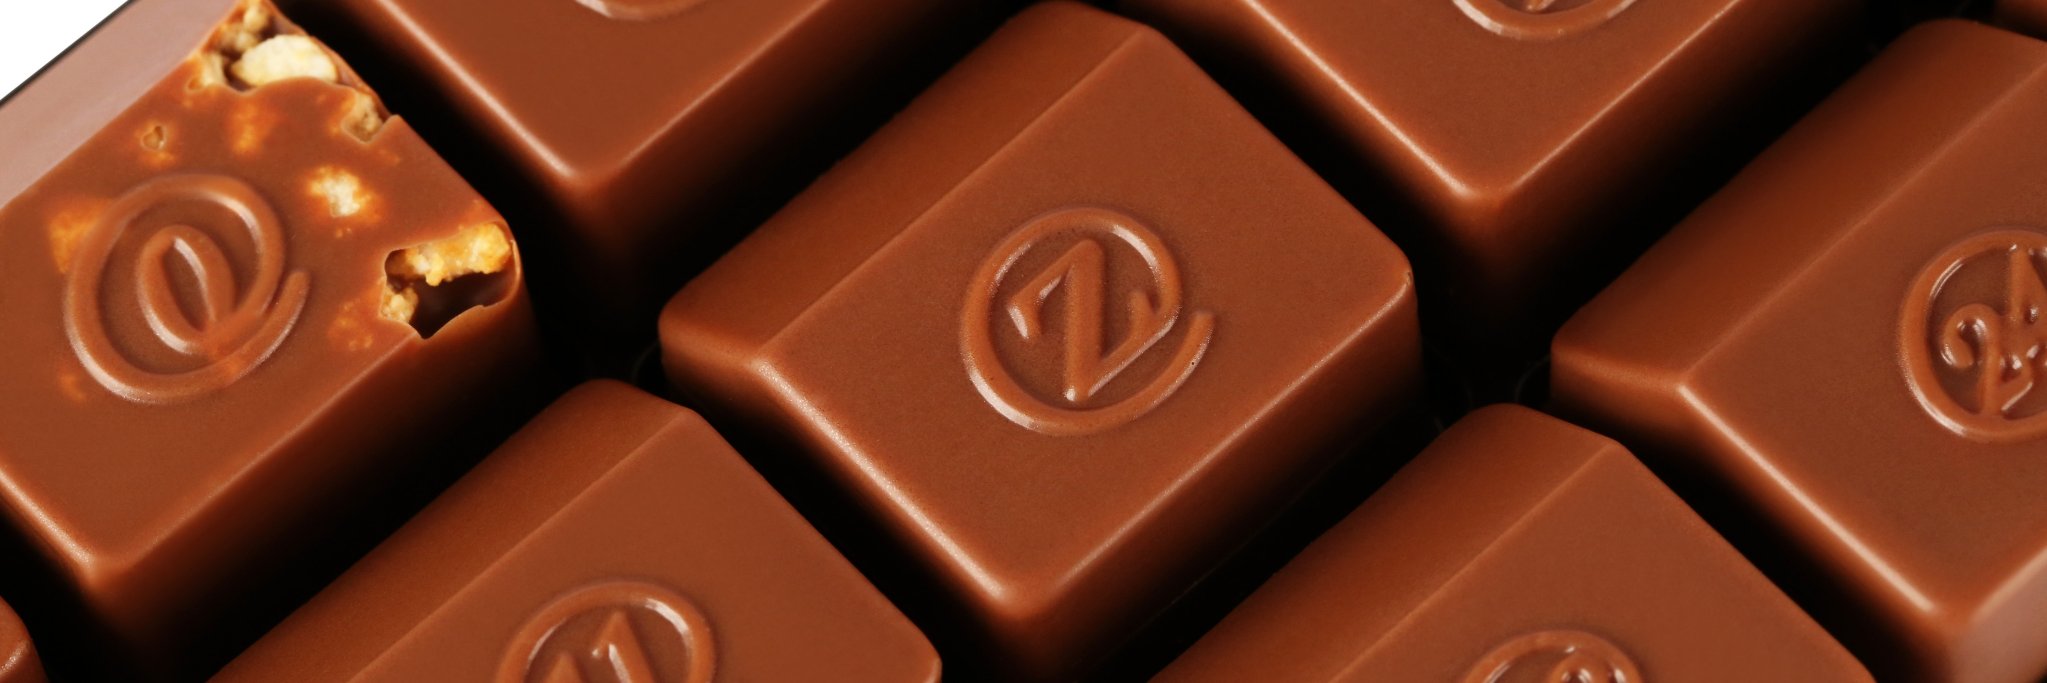 zchocolate logo